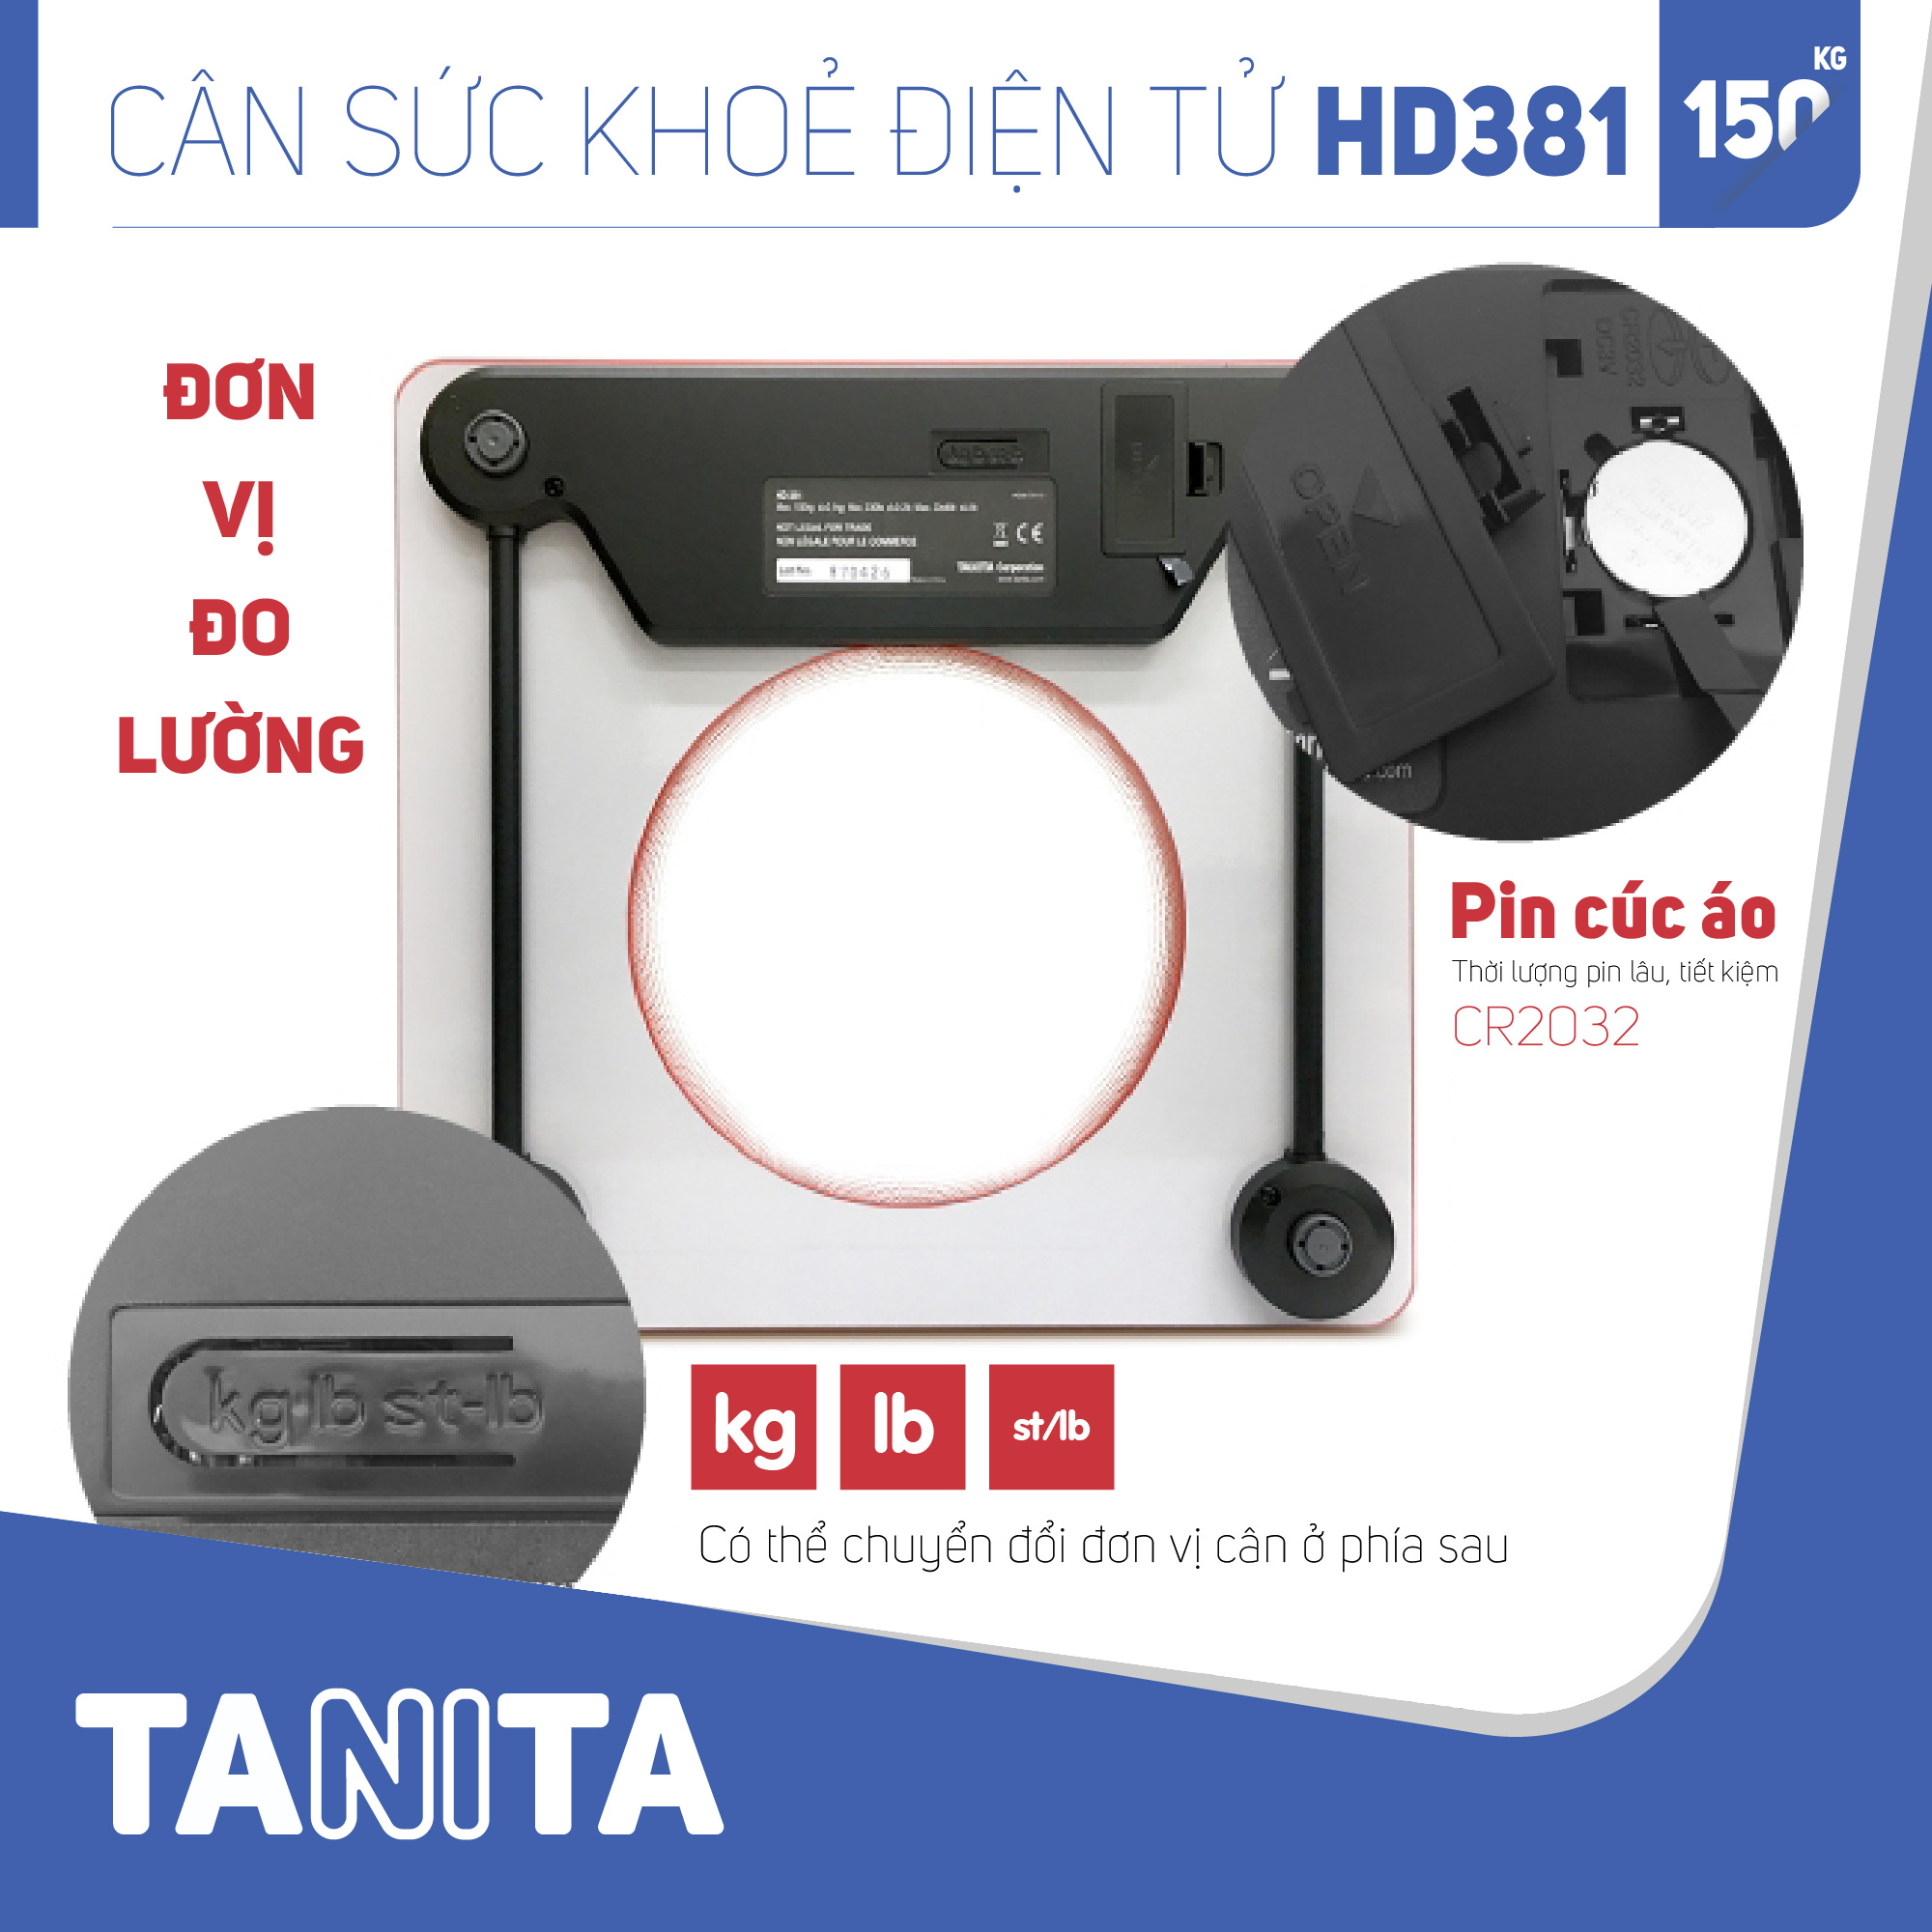 Cân sức khoẻ điện tử Tanita HD381 Nhật Bản, Cân tanita, chính hãng nhật bản,cân điện tử,cân chính hãng,cân nhật bản, cân sức khoẻ y tế, cân sức khoẻ gia đình, cân sức khoẻ cao cấp,cân 120kg,cân 130kg,cân 150kg,Cân sức khoẻ mini